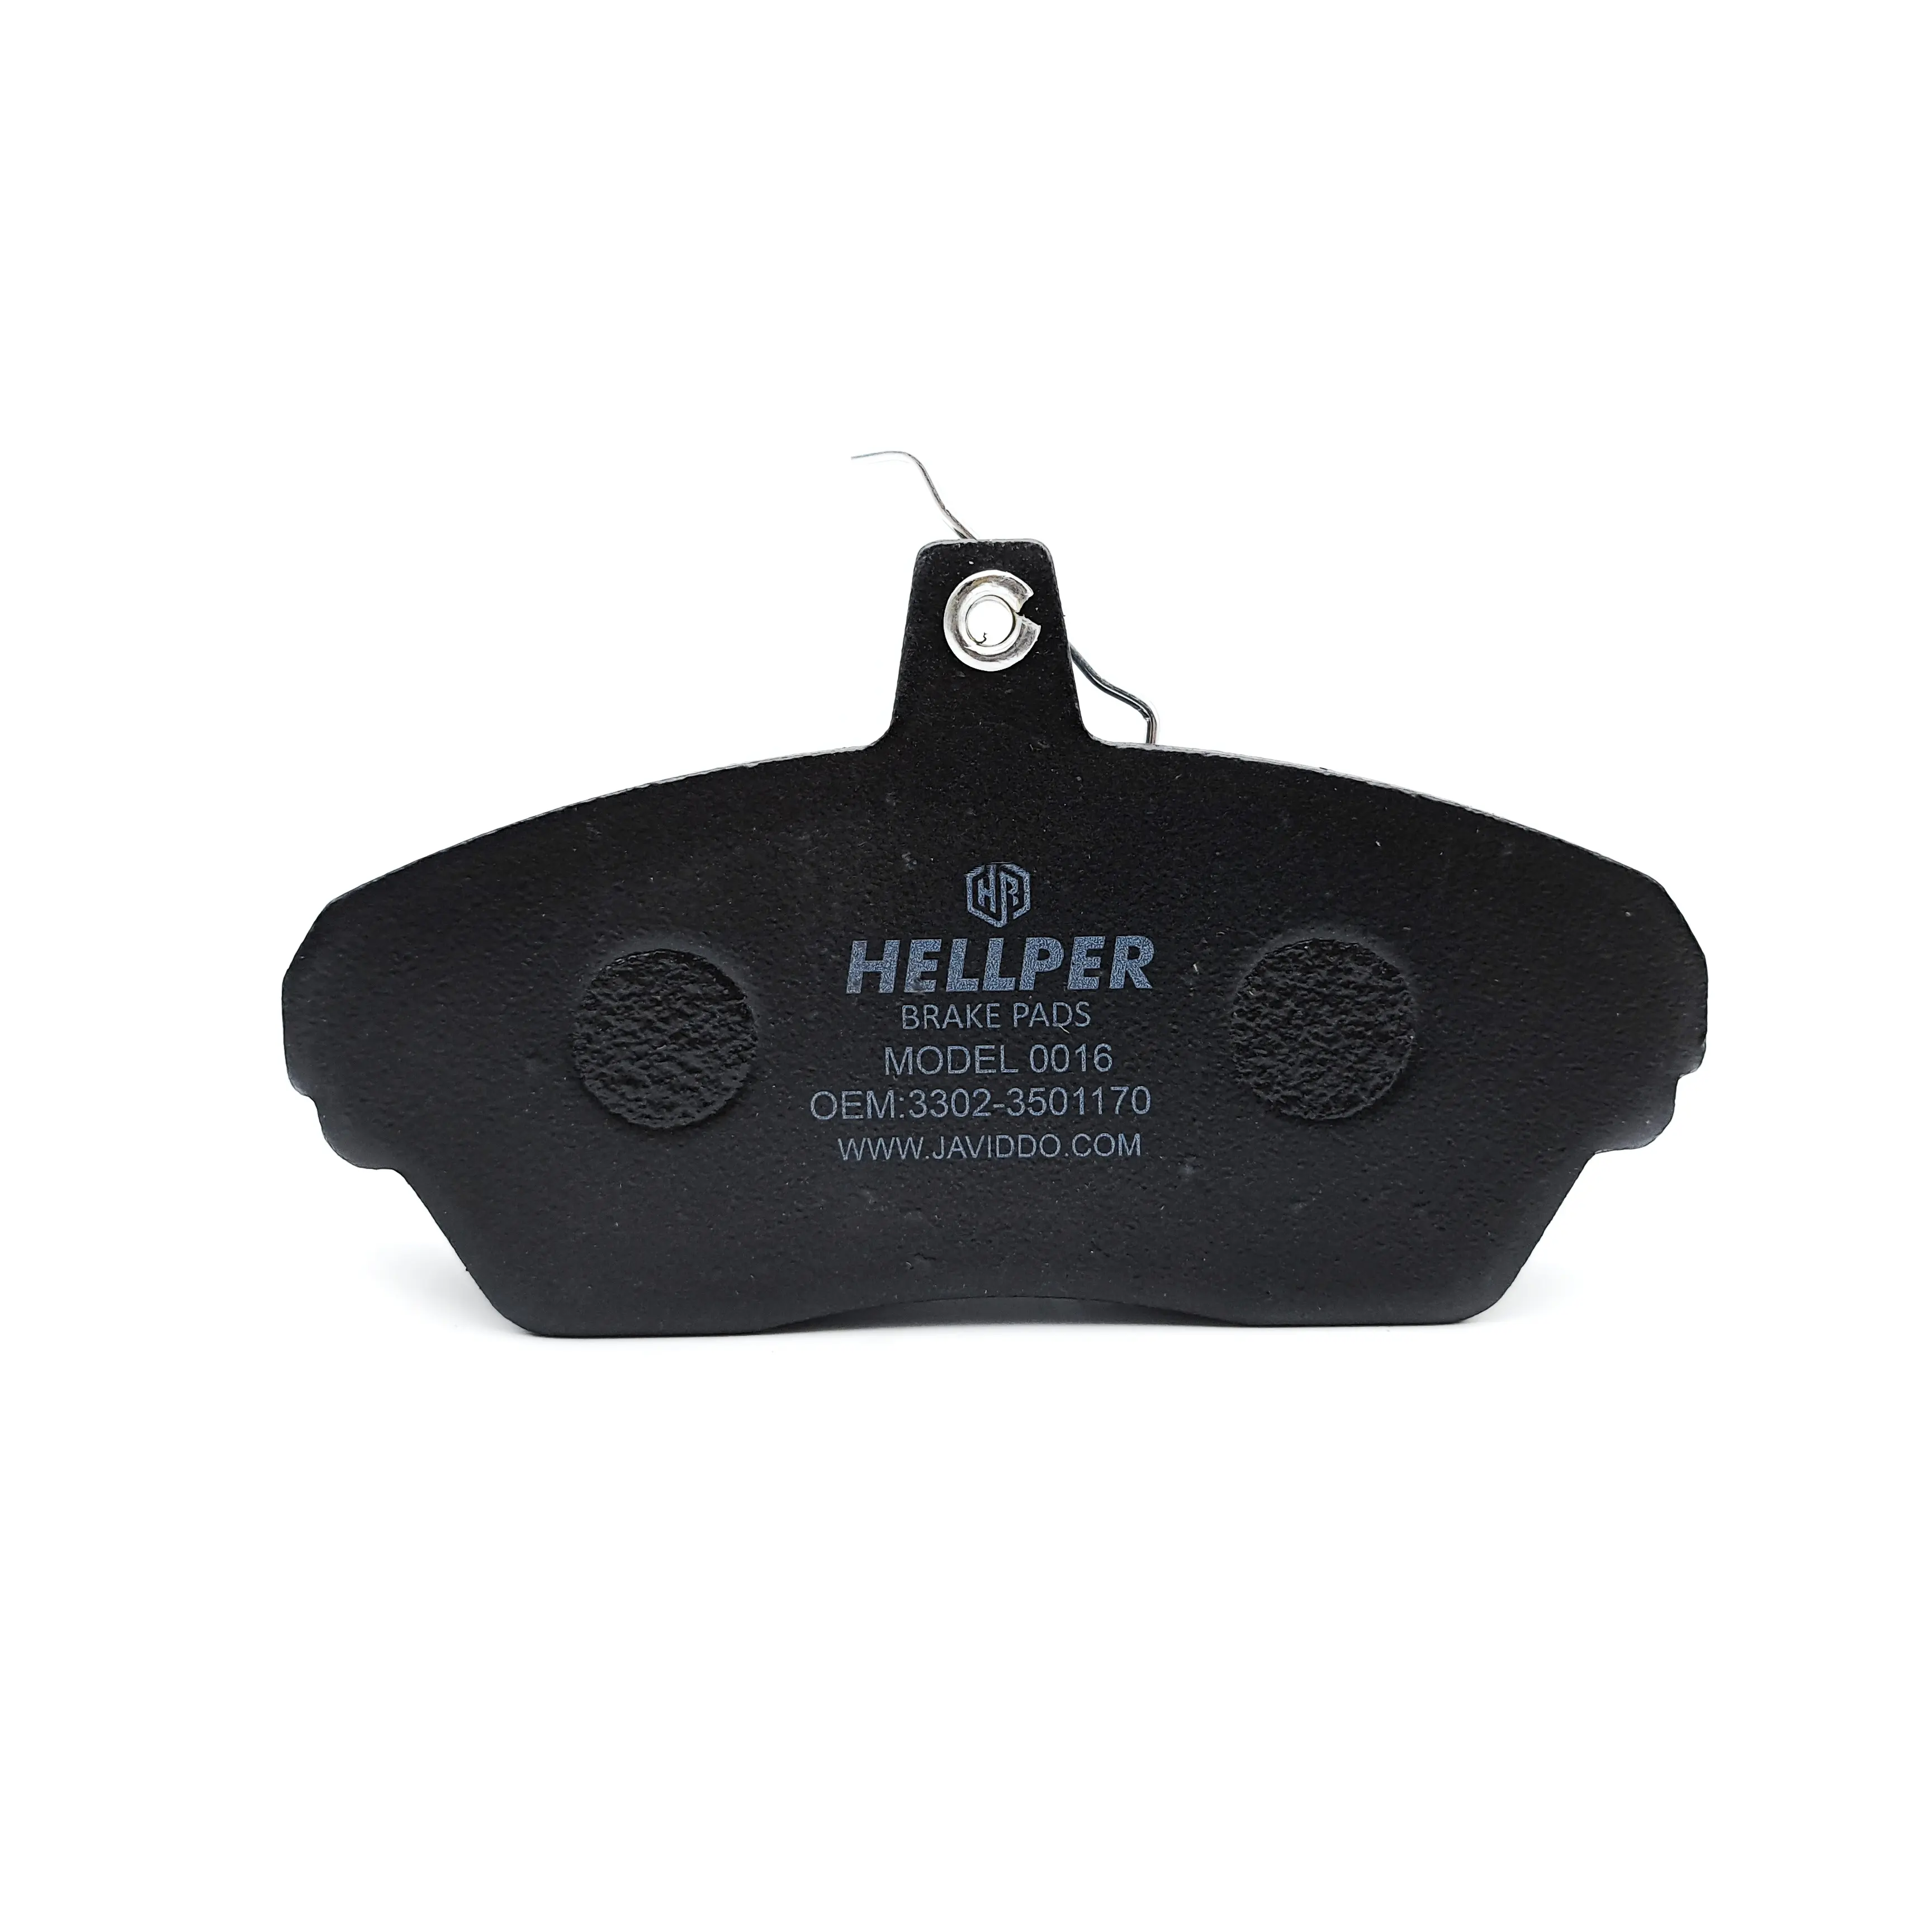 Hellper Brake Pads OEM 3302-3501170 for GAZelle